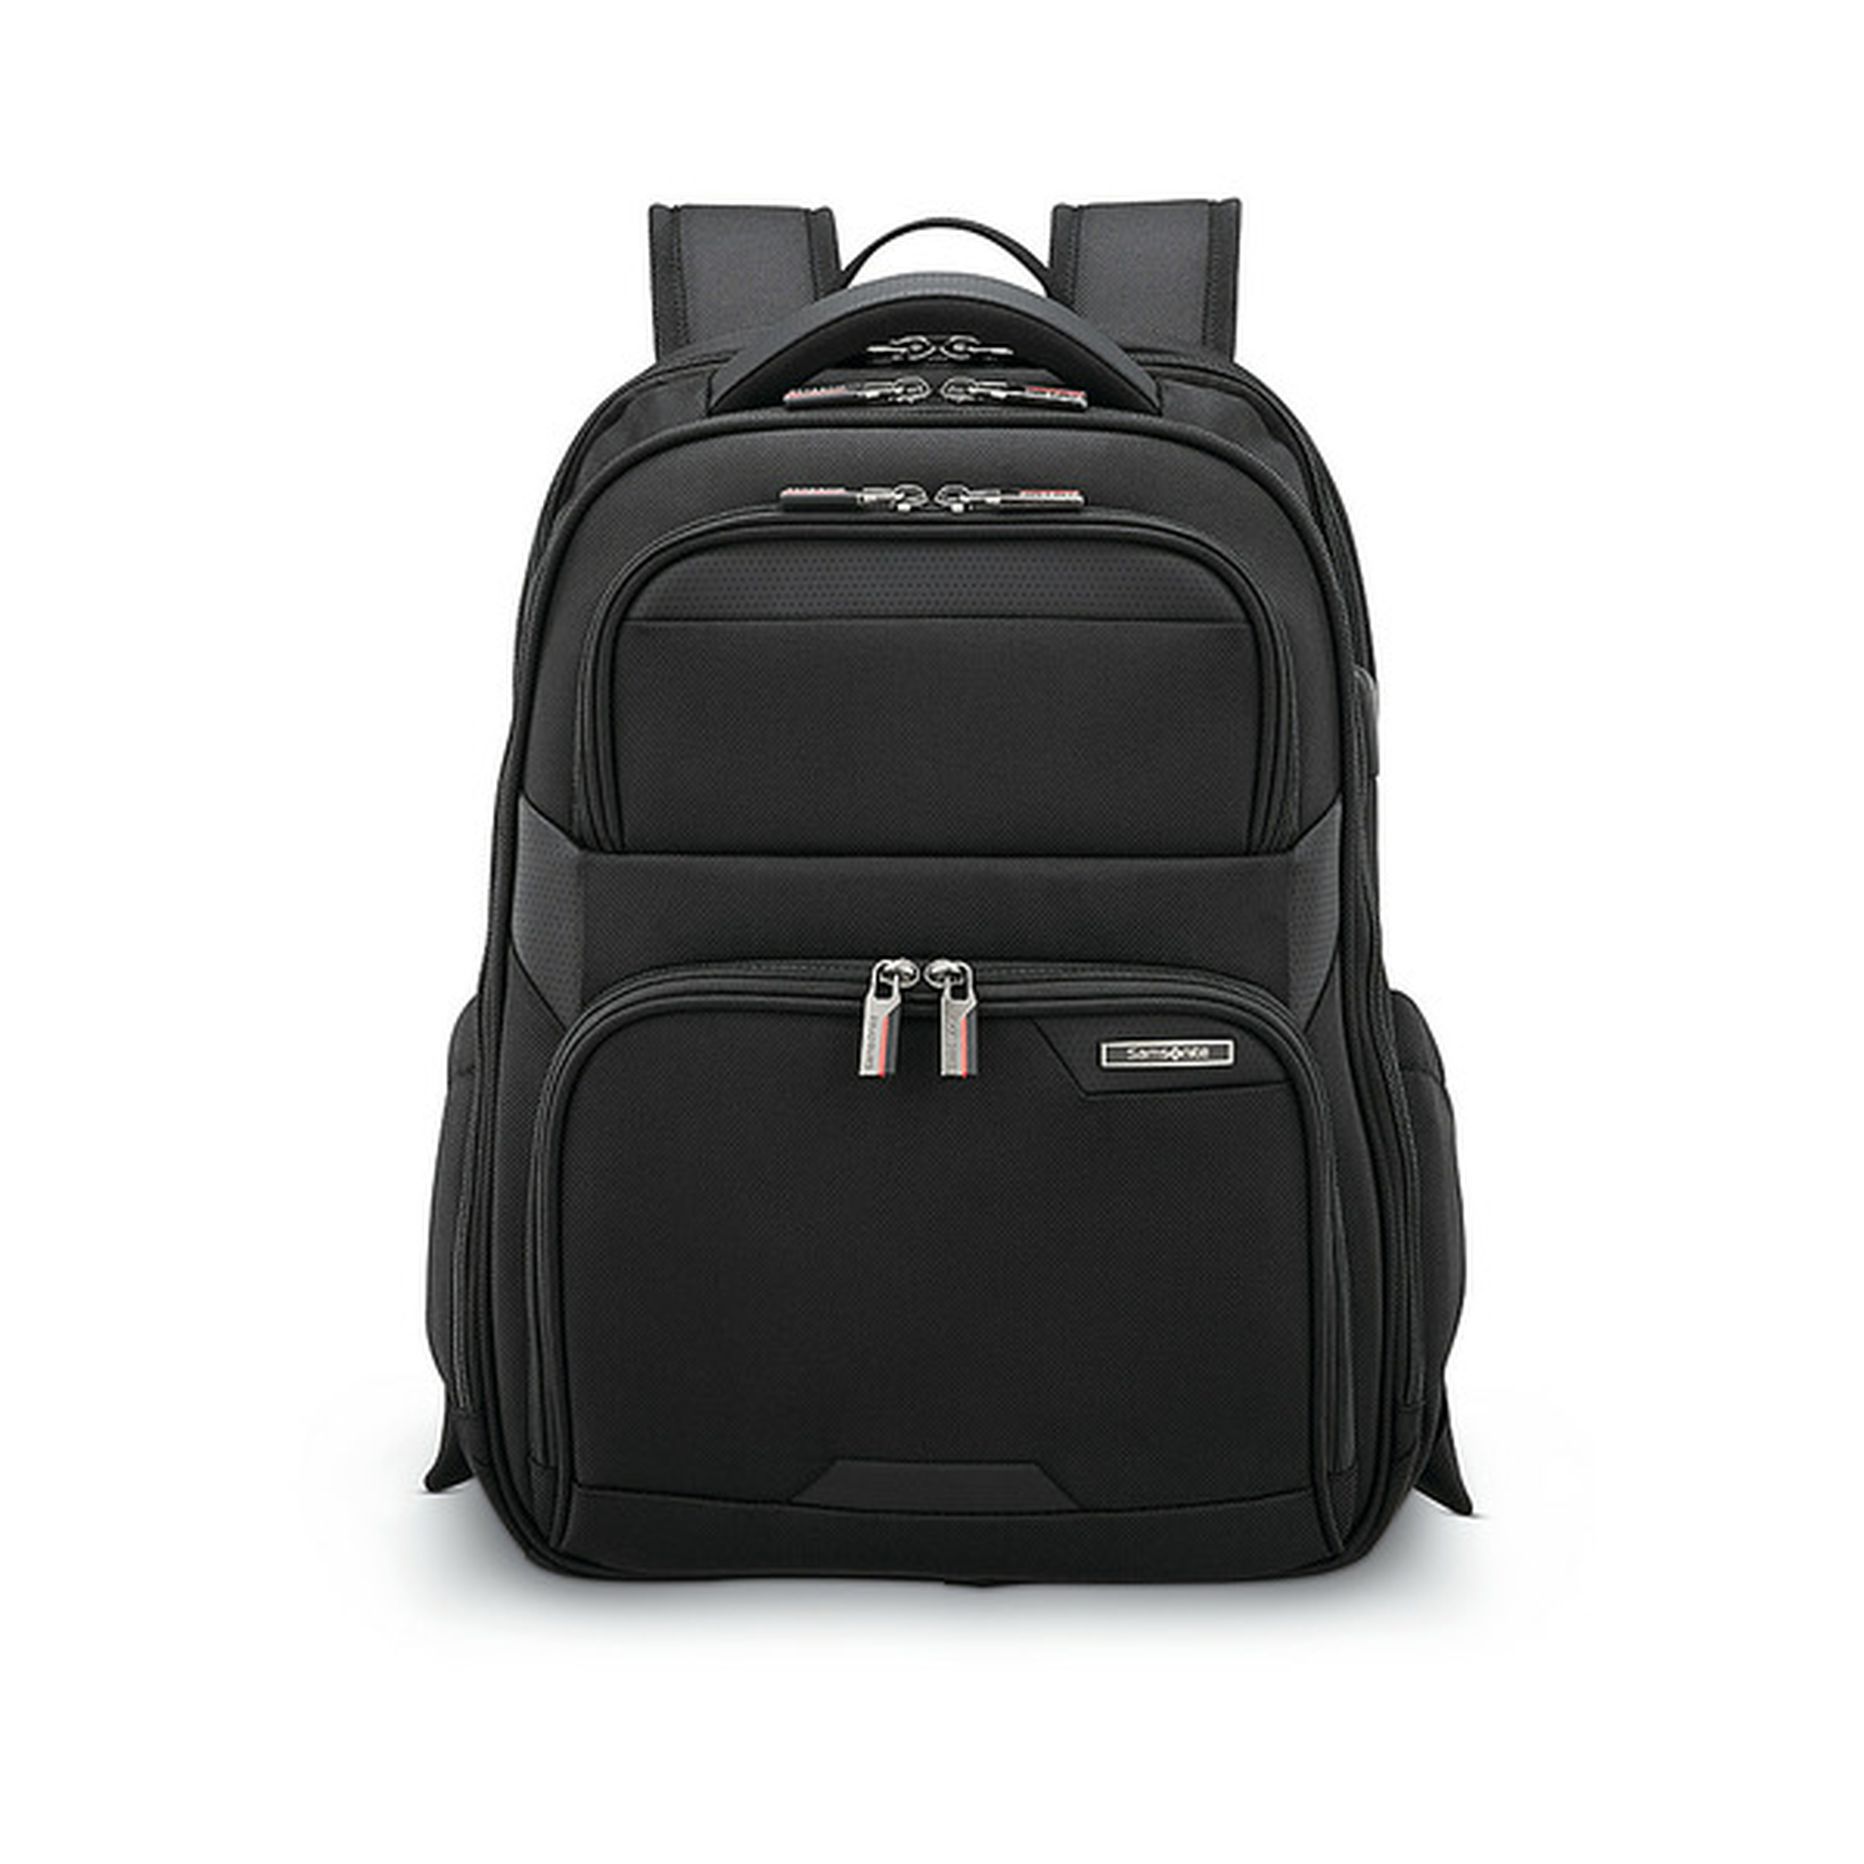 Samsonite Laser Pro 2 Laptop Backpack - 15.6” (each) Delivery or Pickup ...